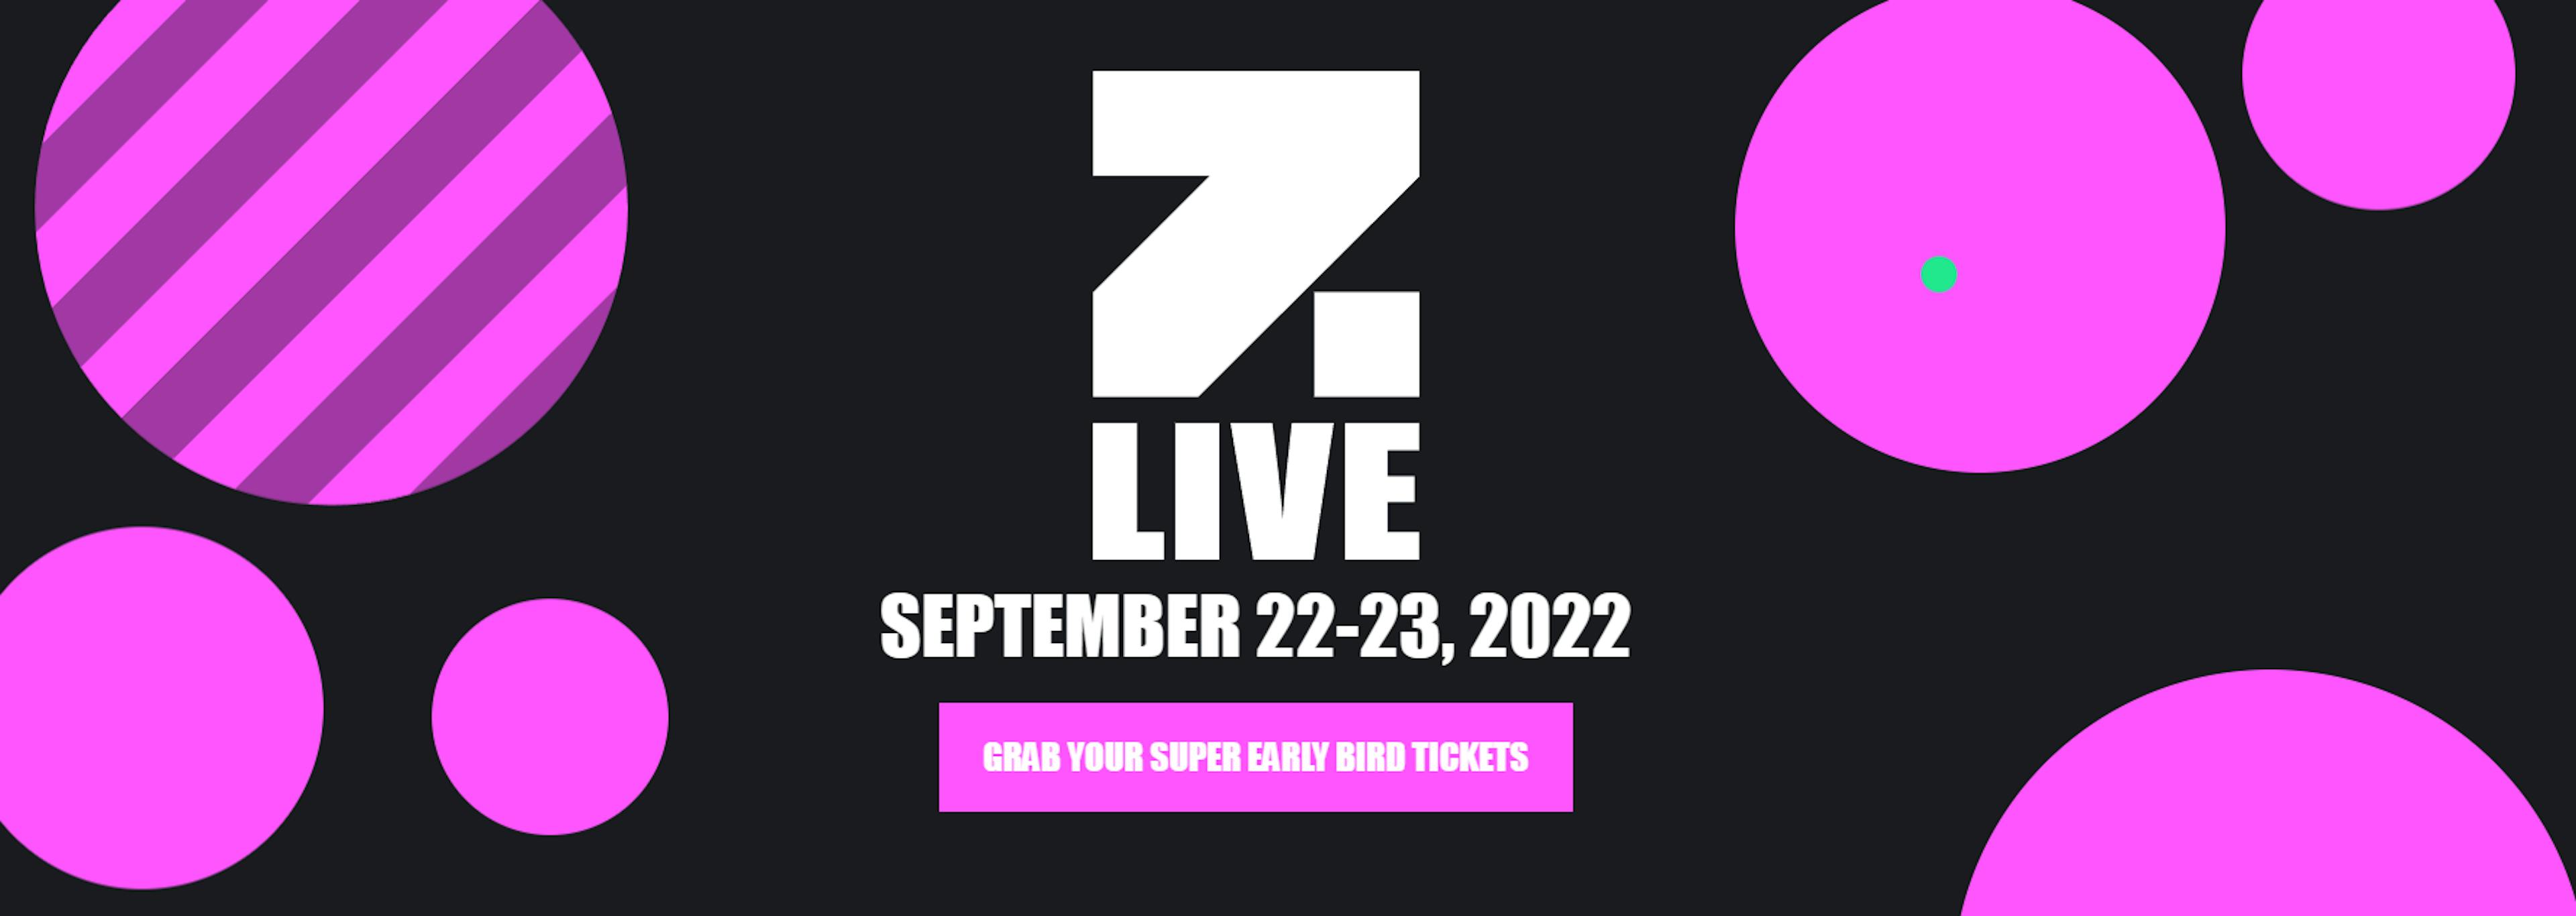 Zebu Live Conference in London